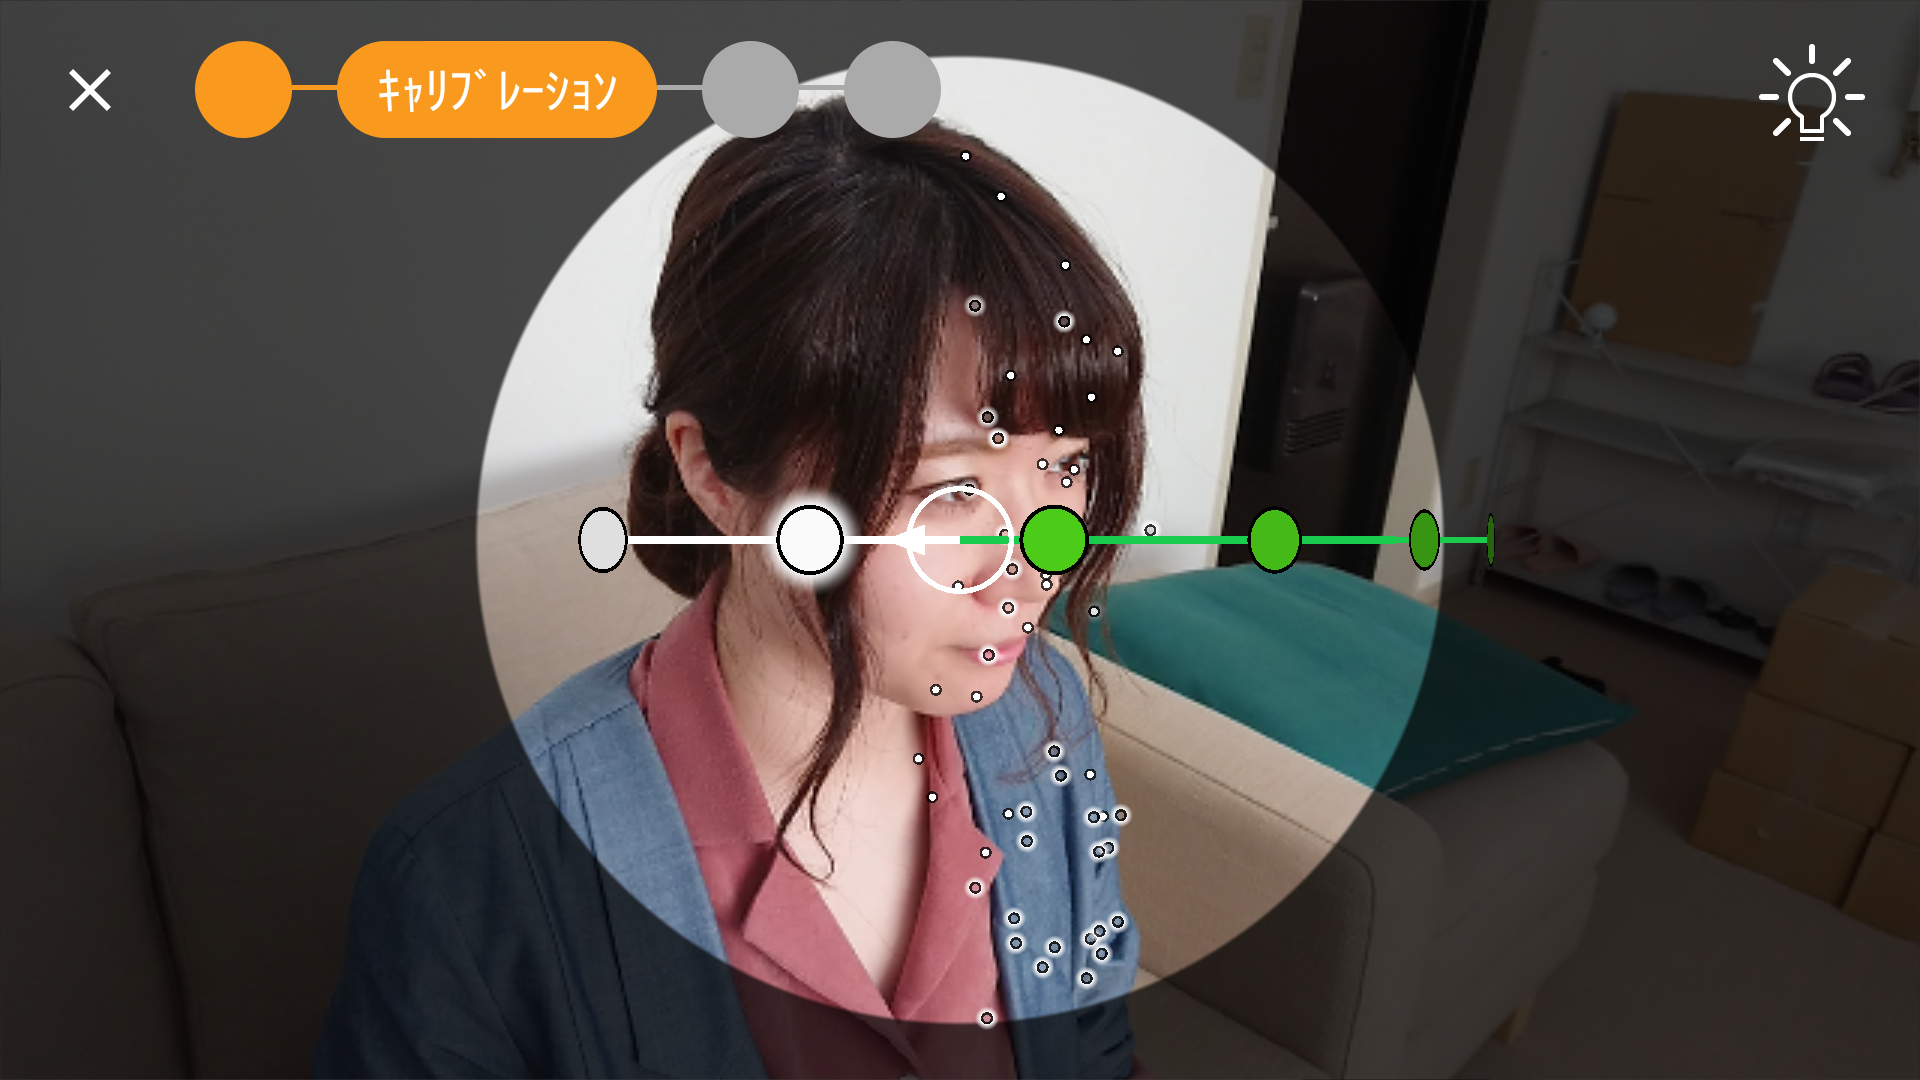 Xperia Xz1の 3dクリエイター でディテールまで再現した3d自画像を作ってみた Xperia Tips Engadget 日本版